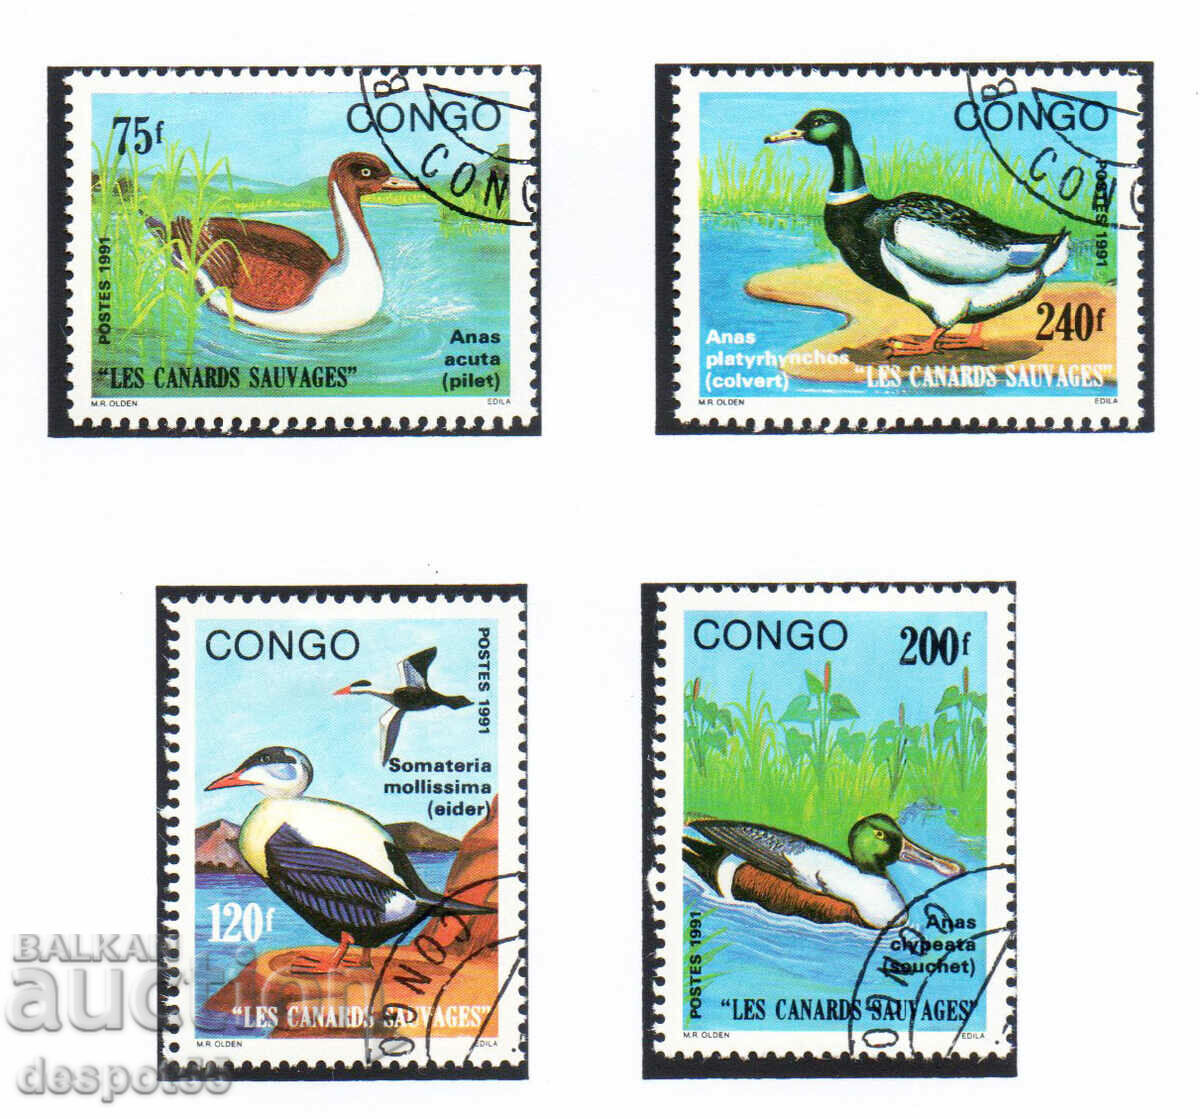 1991. Congo, Rep. Wild geese.